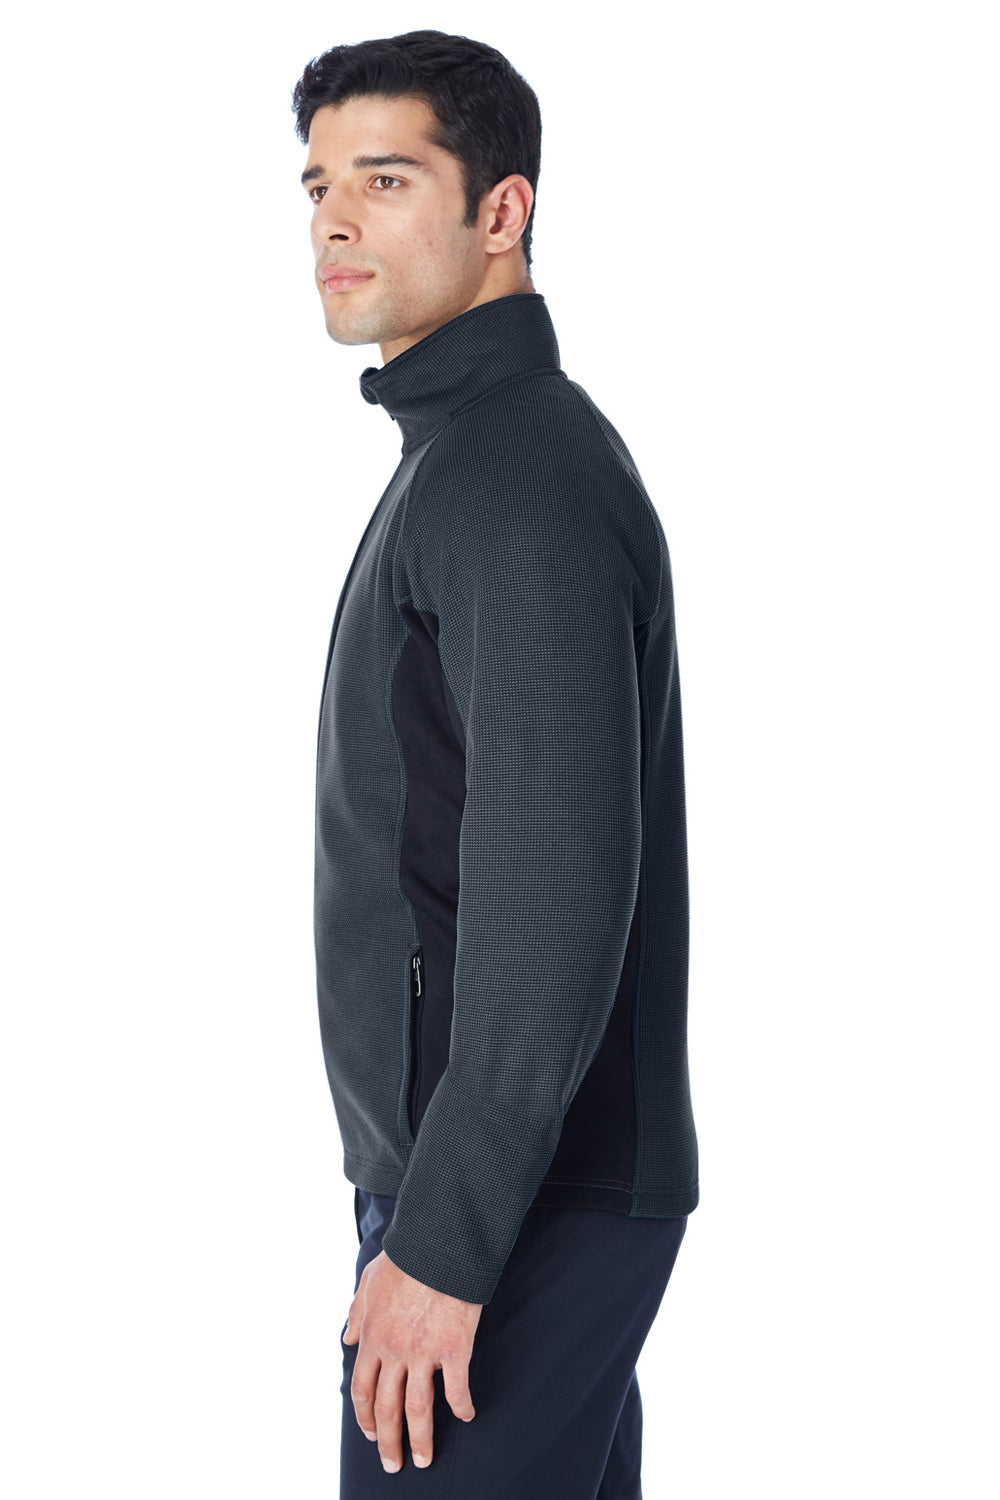 Spyder 187330 Mens Constant Full Zip Sweater Fleece Jacket Frontier Blue Side